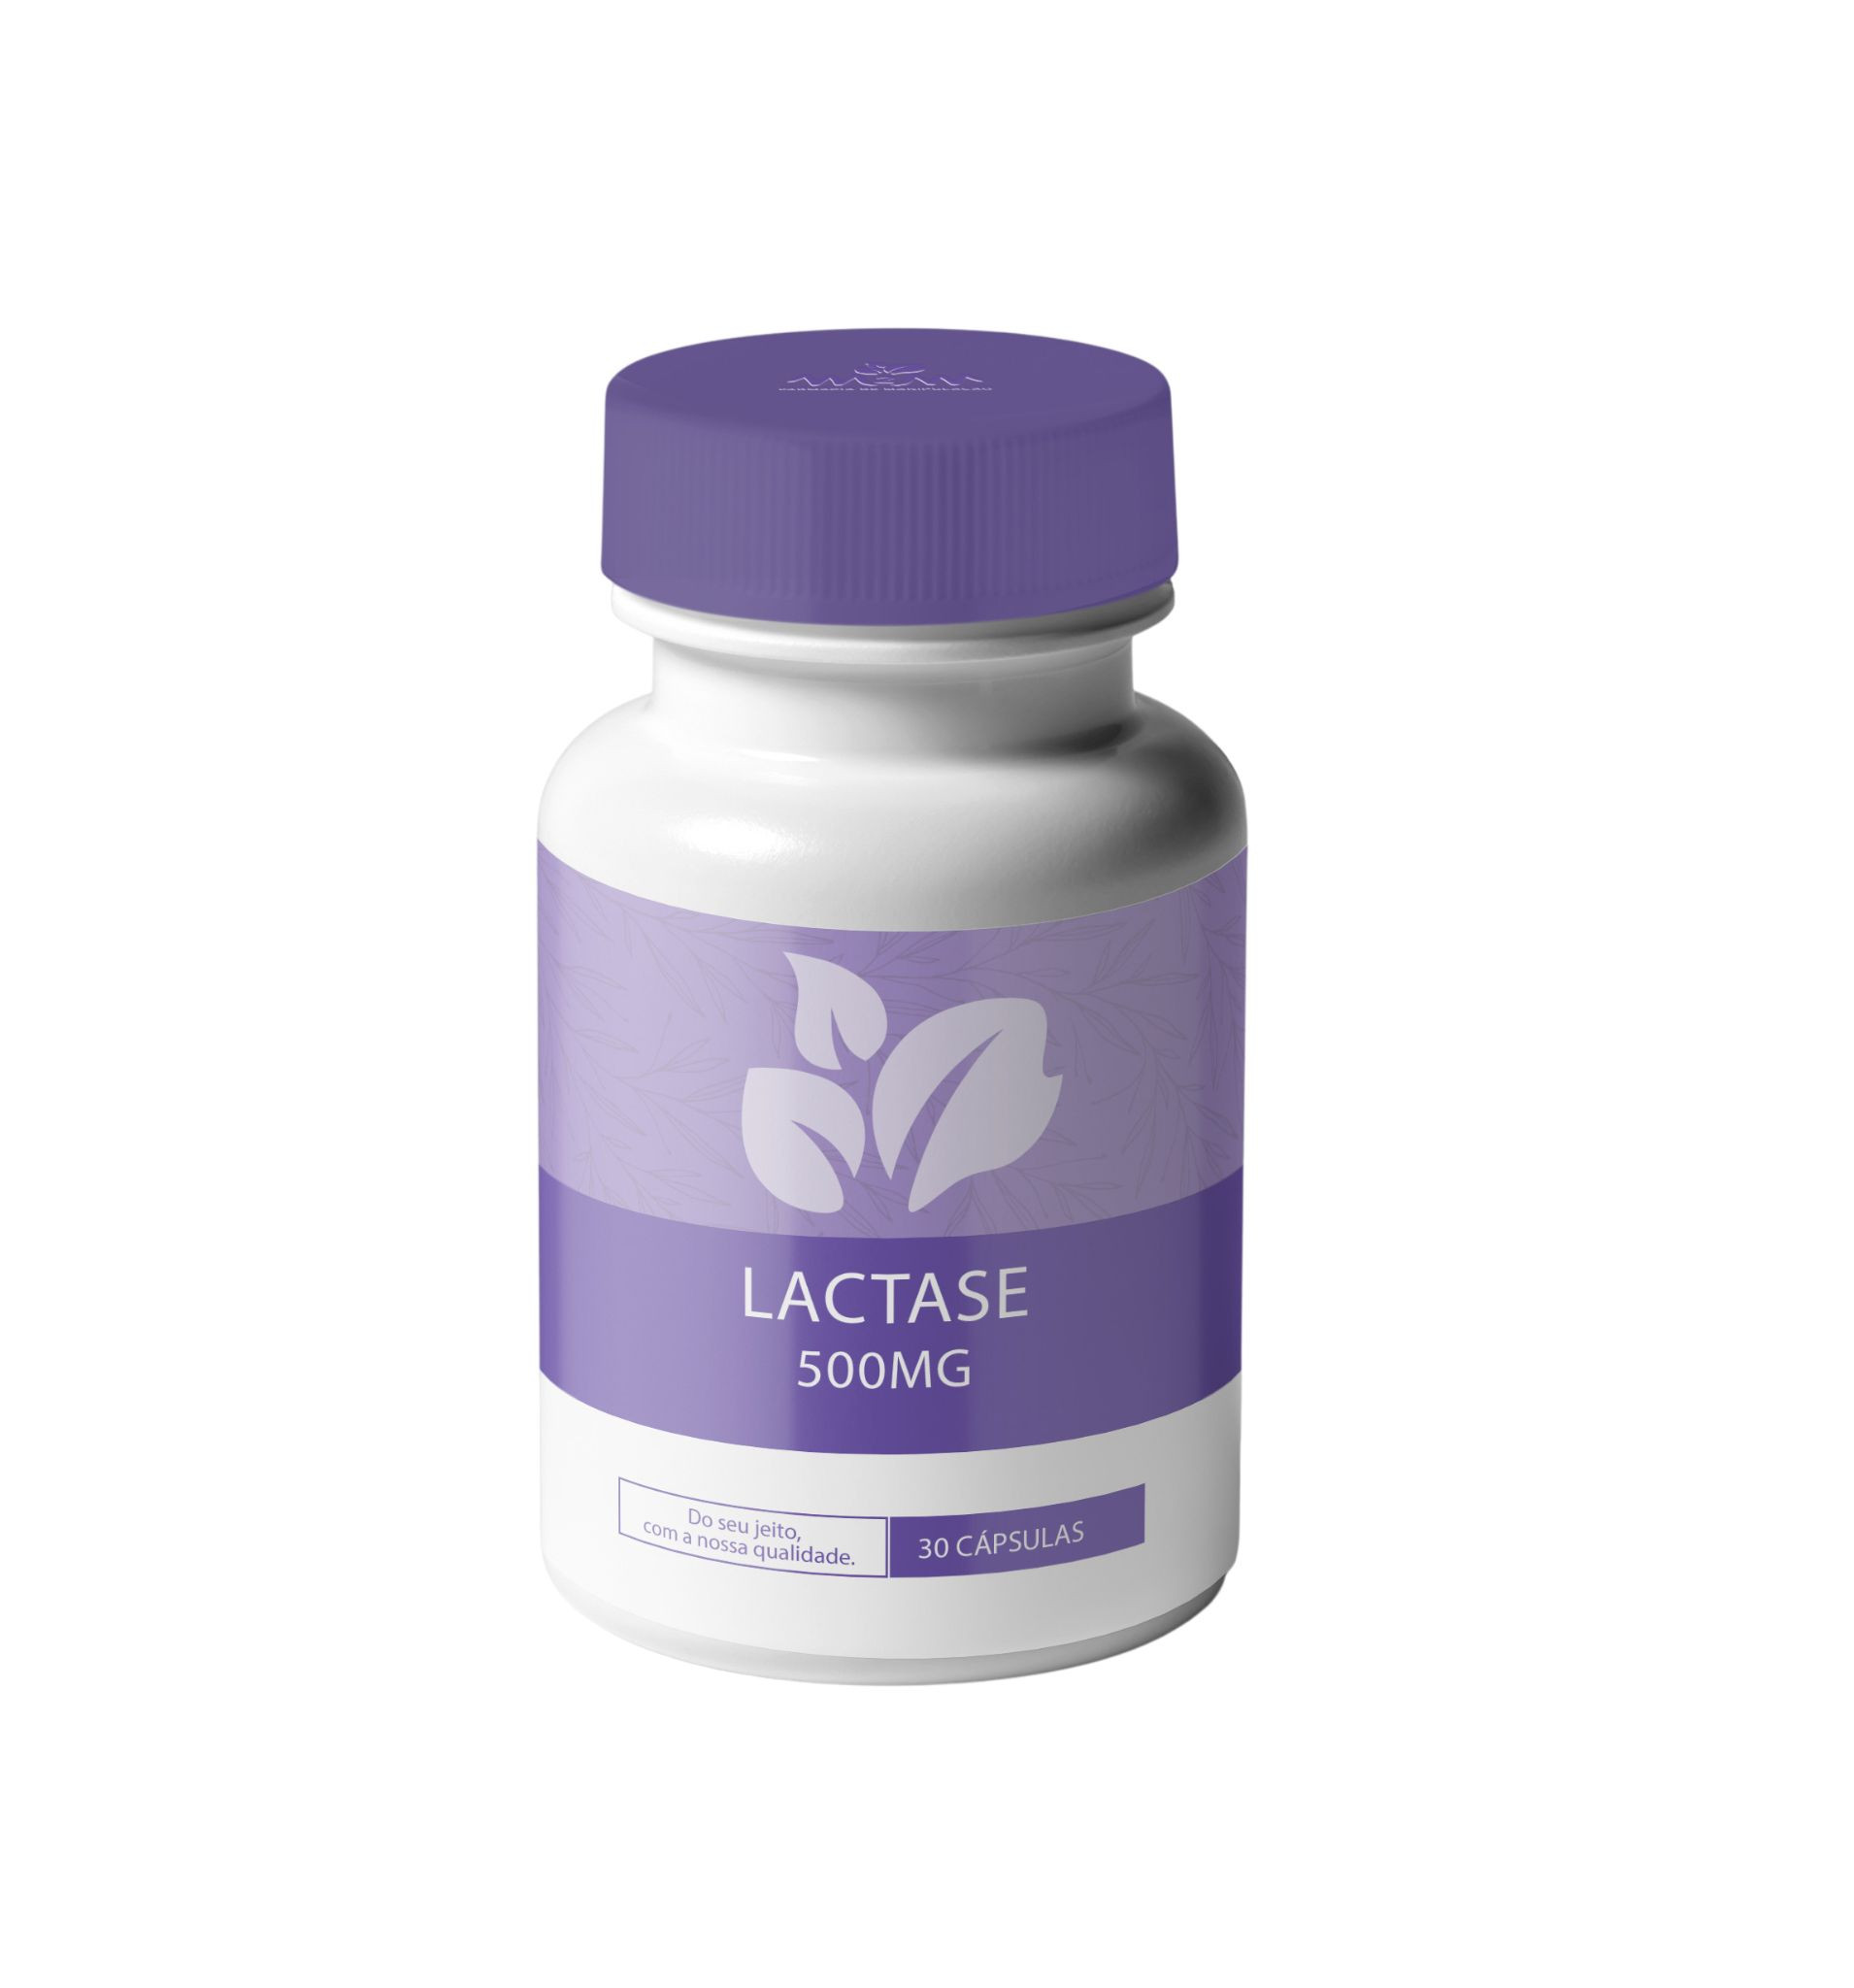 lactase-500mg-30-capsulas-capsulas-para-intolerancia-a-lactose